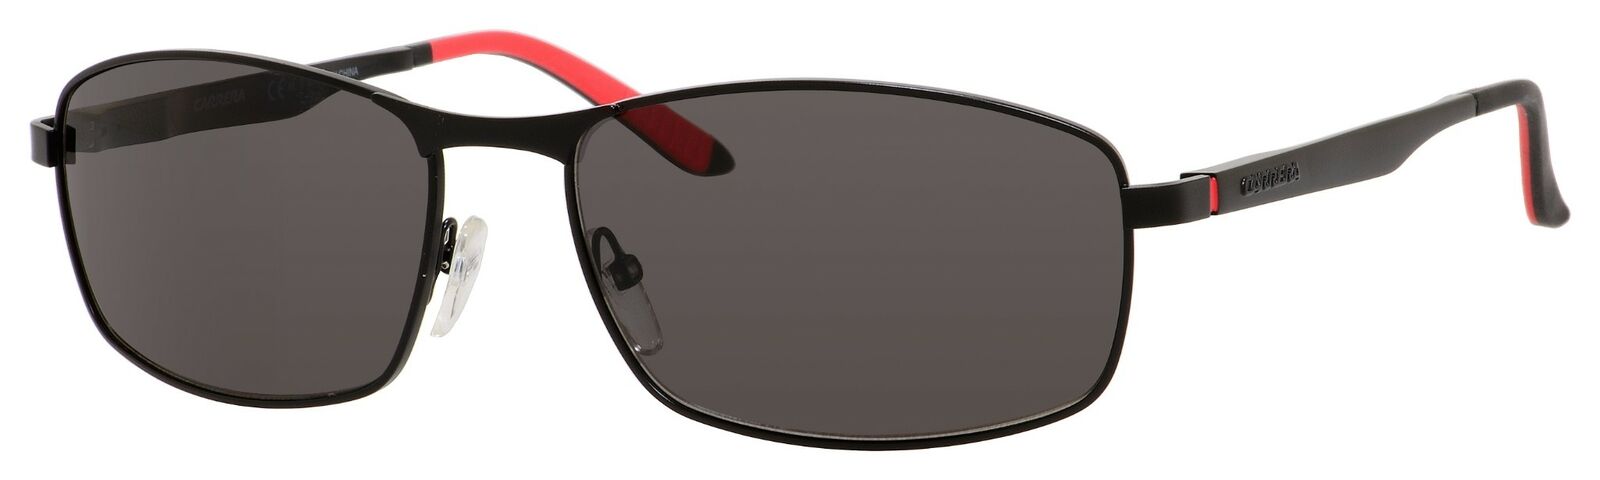 Carrera 8012/S 0003/M9 Matte Black/ Gray Polarized Sunglasses